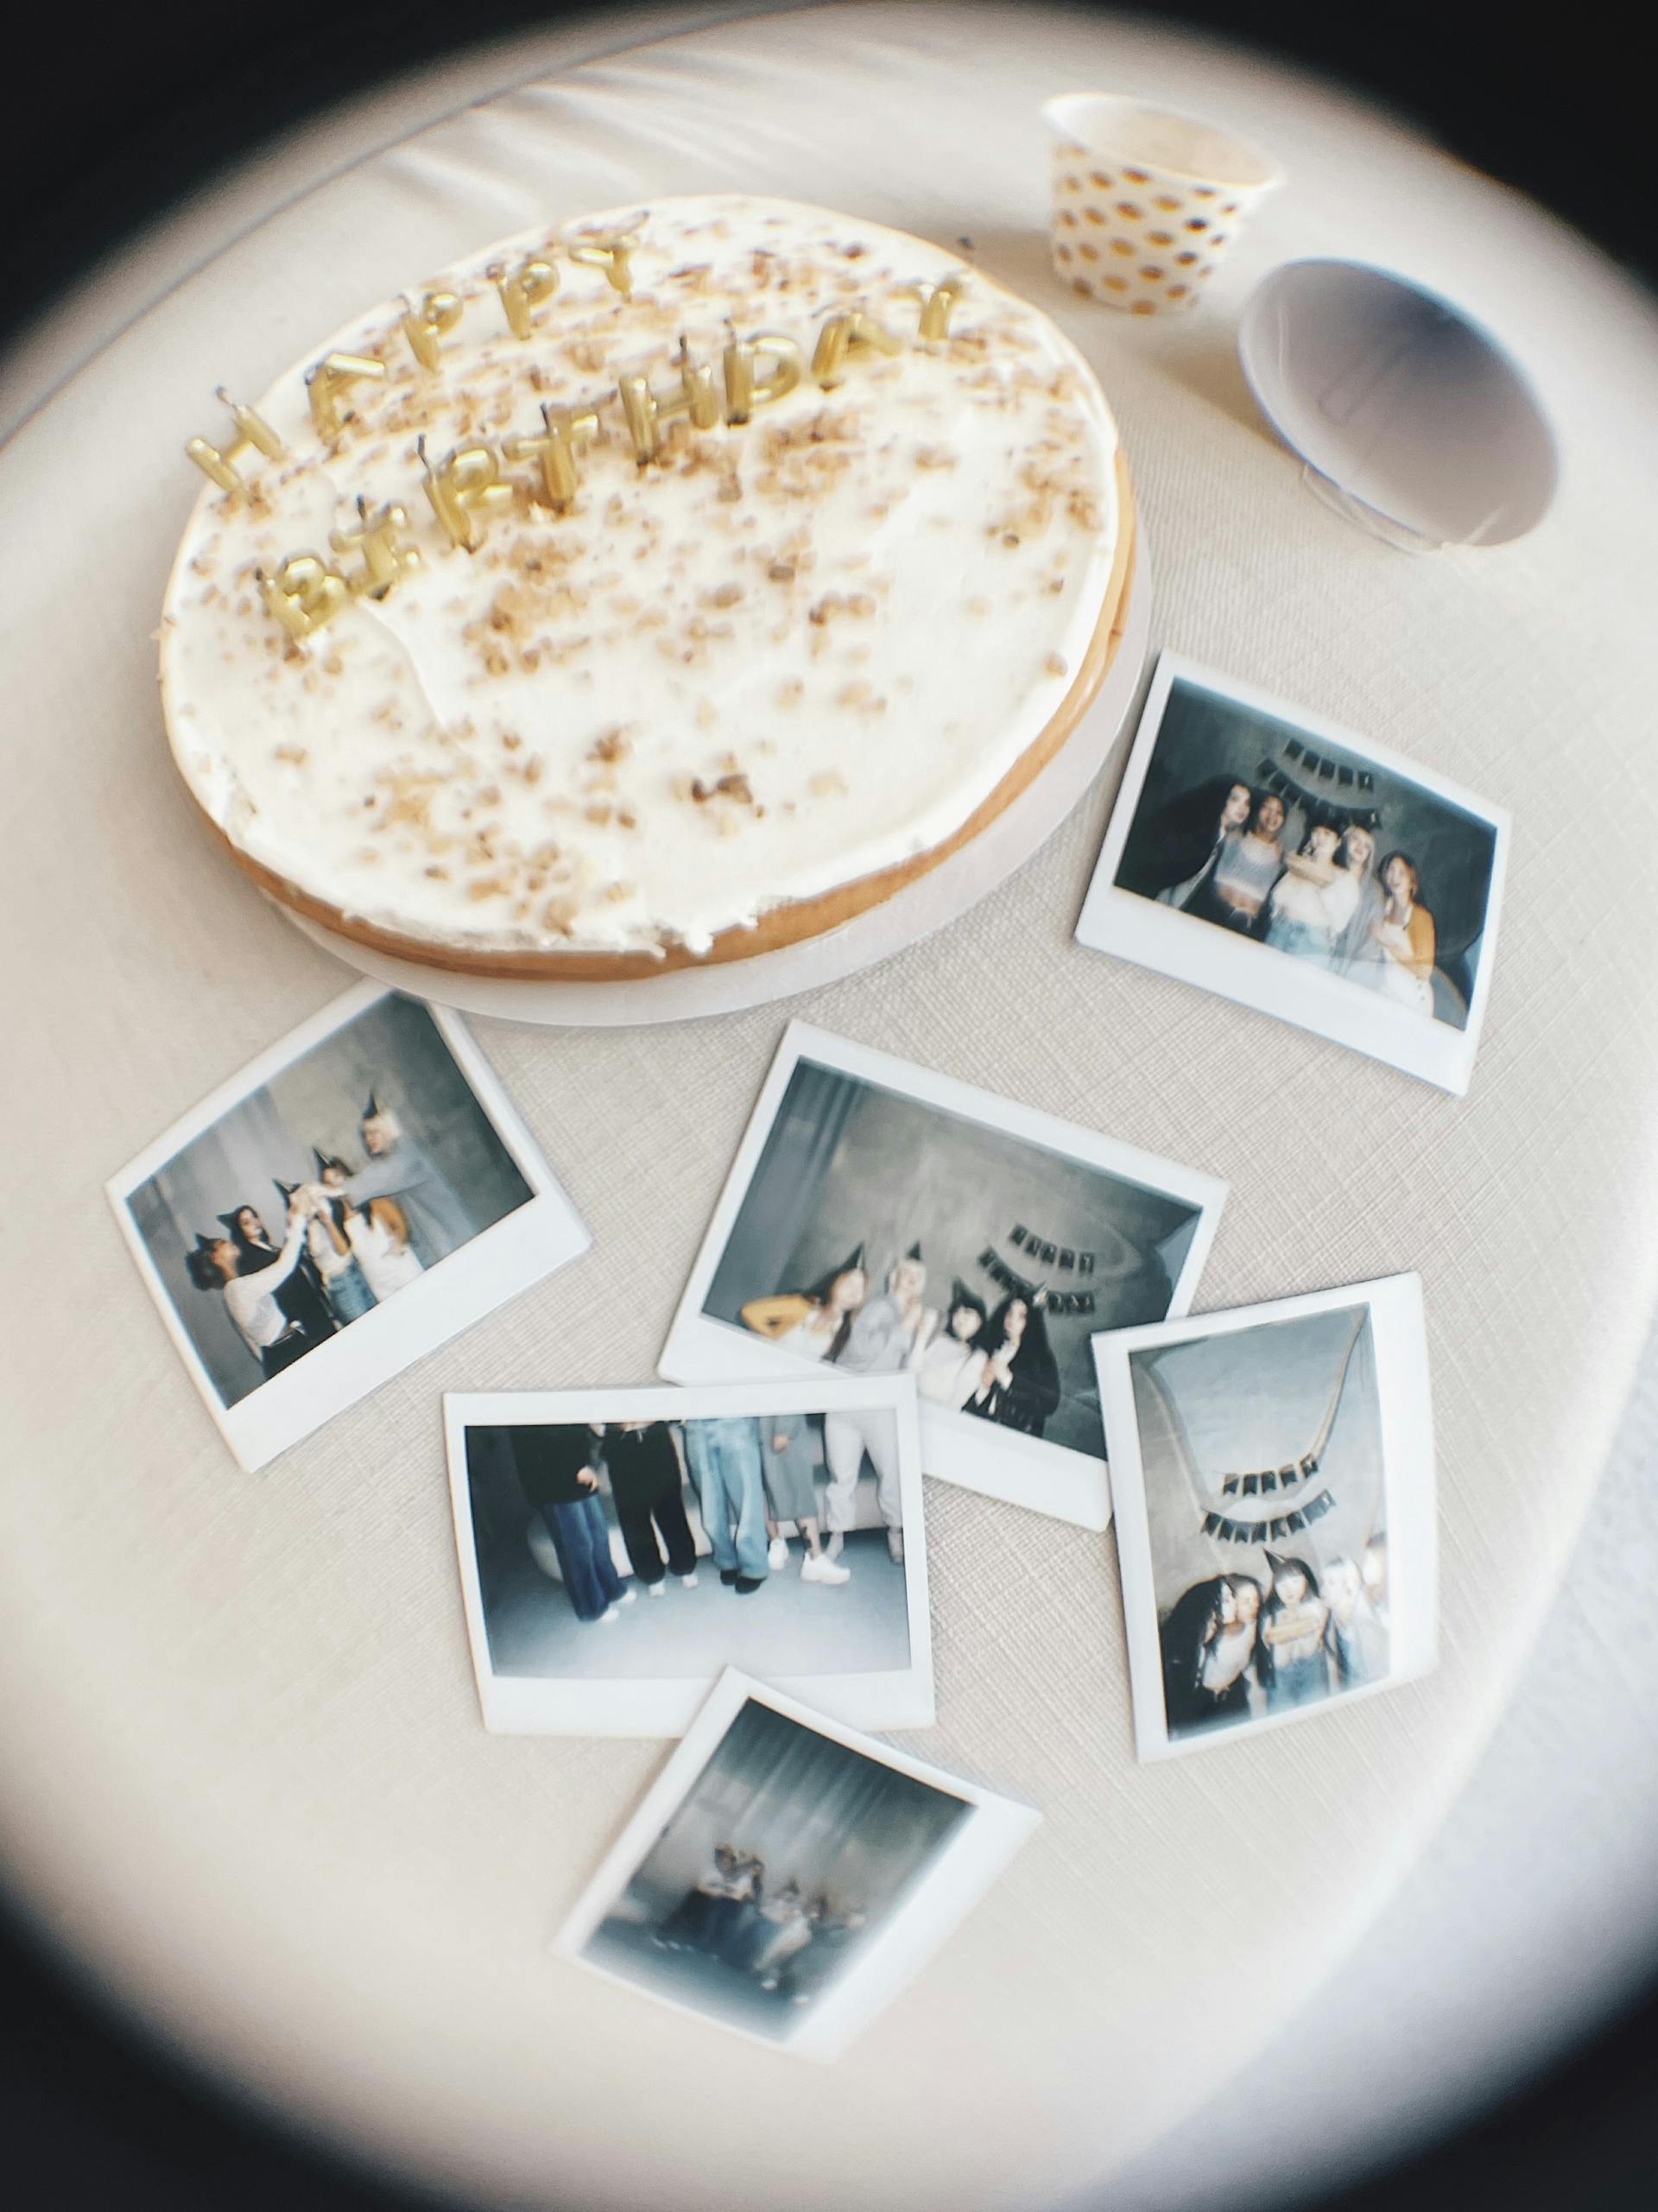 Fotografías junto a un pastel de cumpleaños | Fuente: Pexels